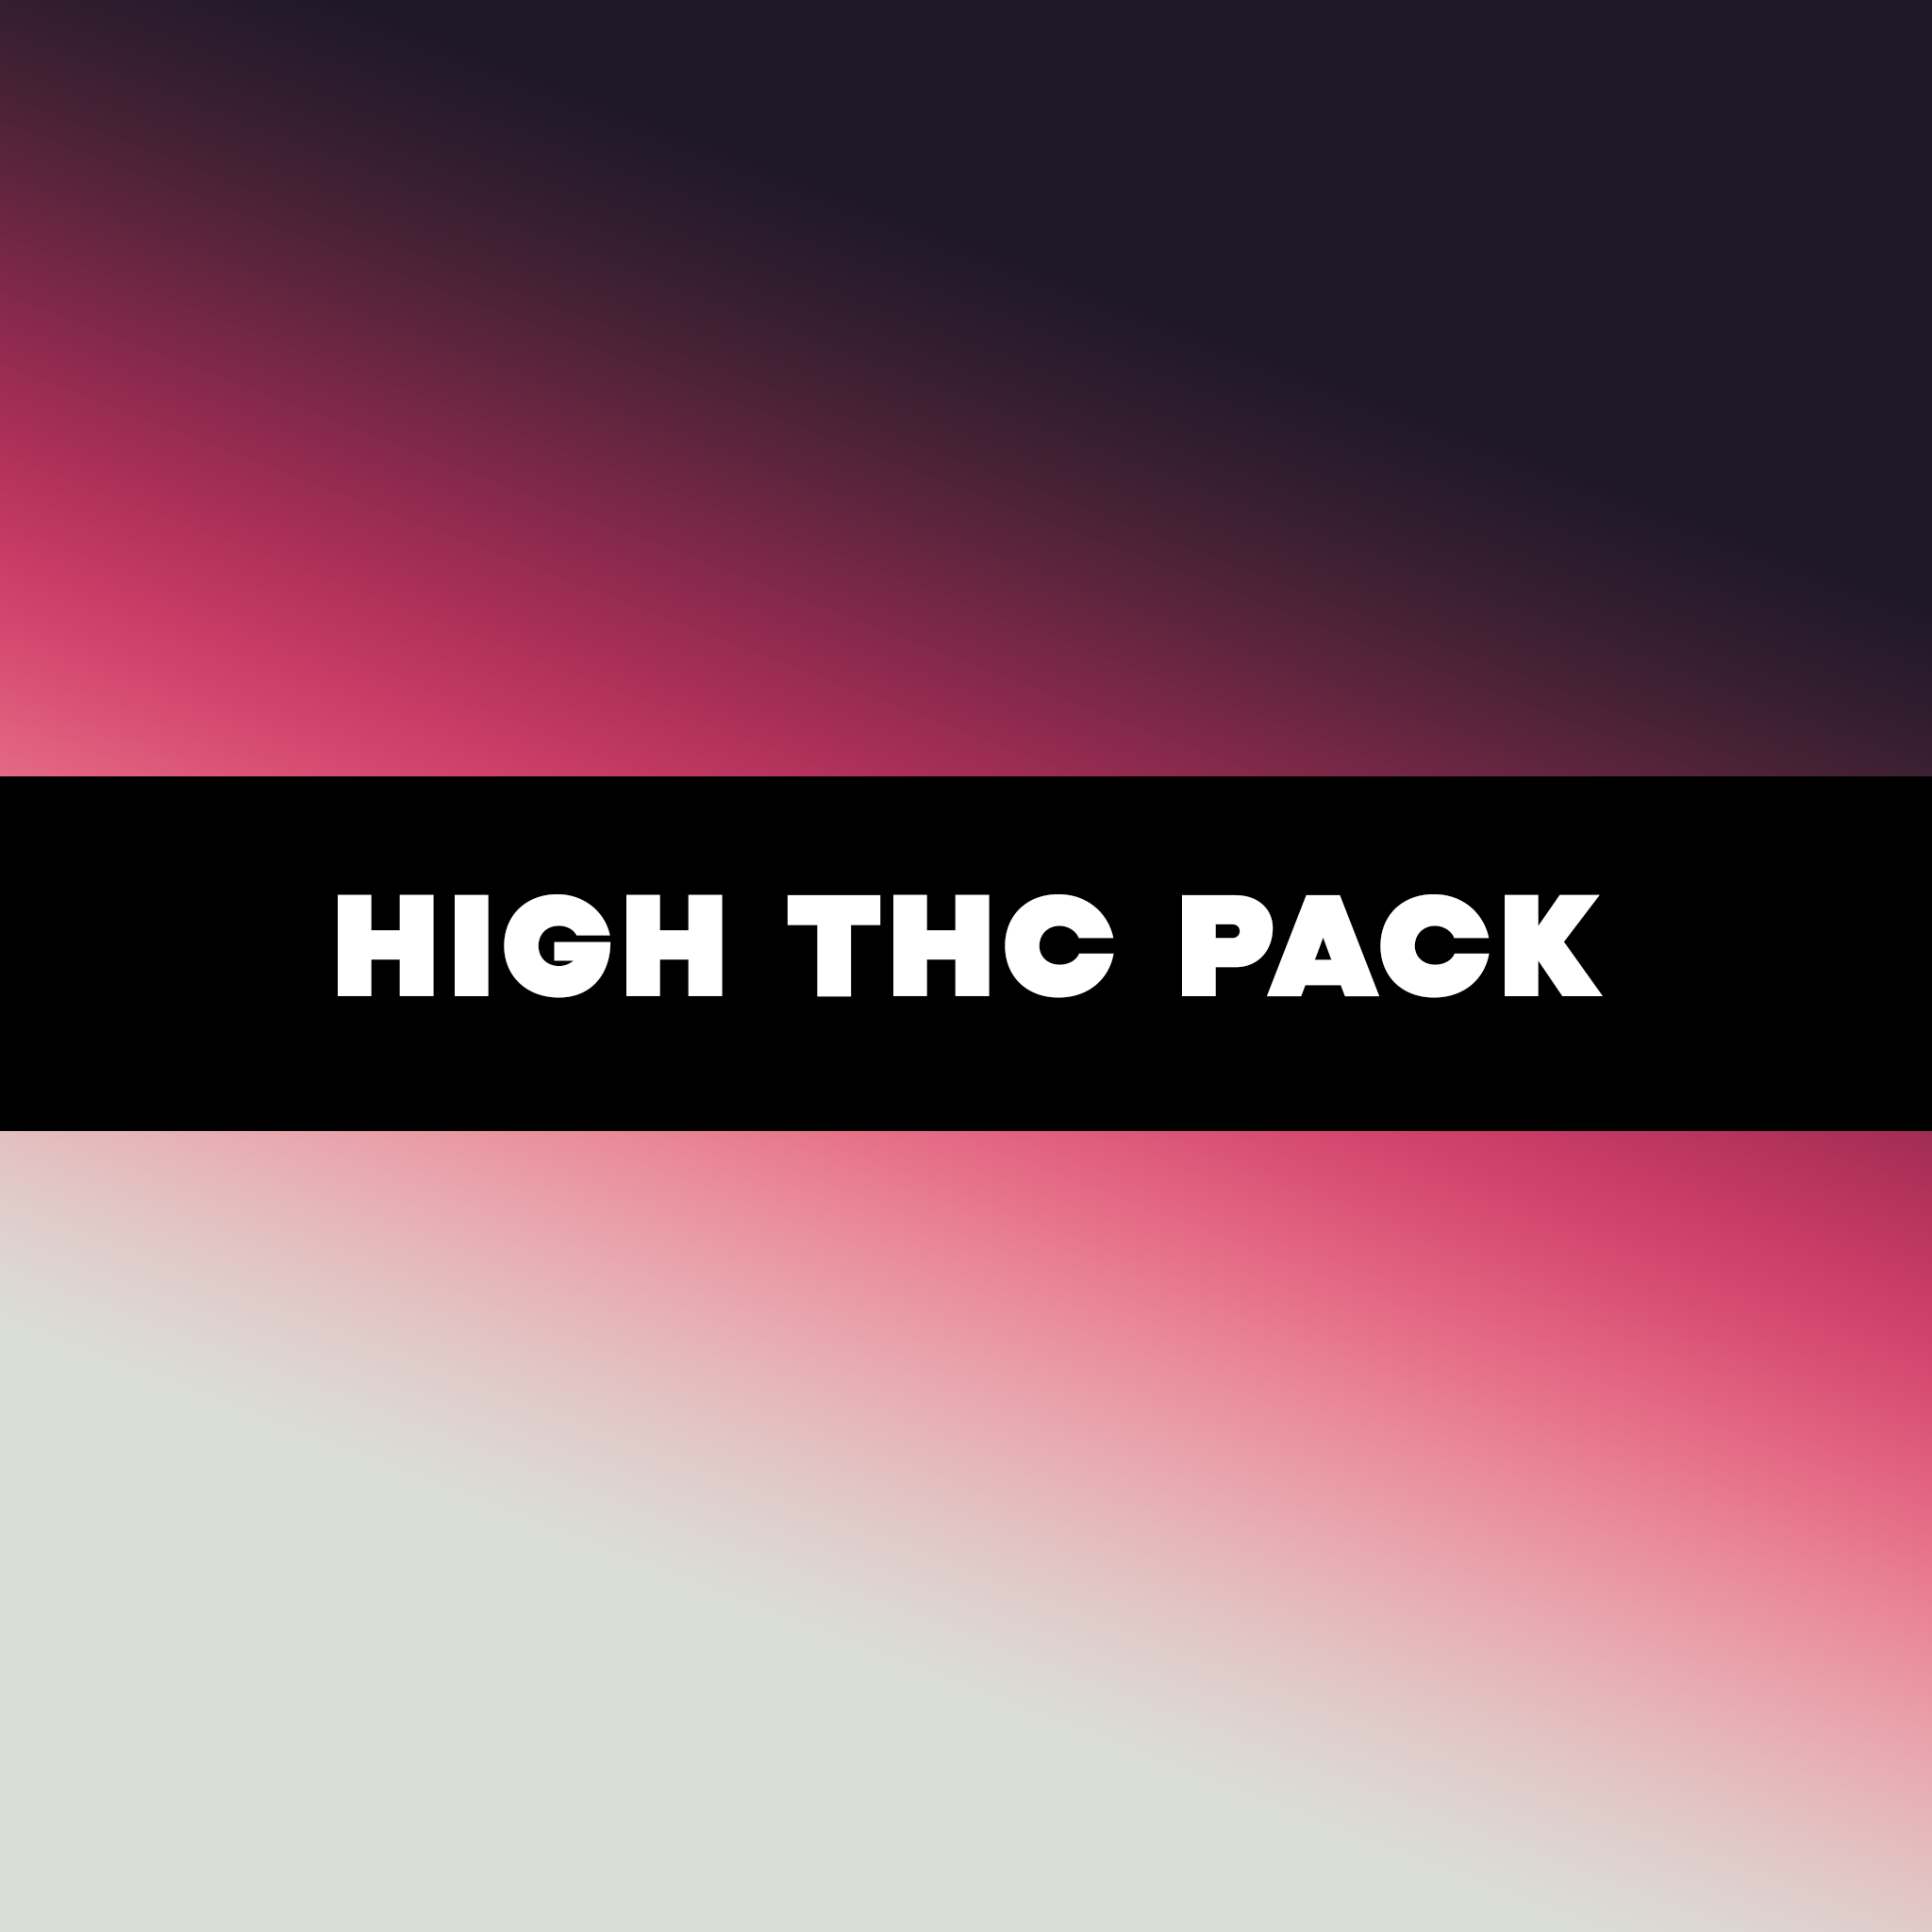 მაღალი THC-ის ნაკრები - High THC Pack